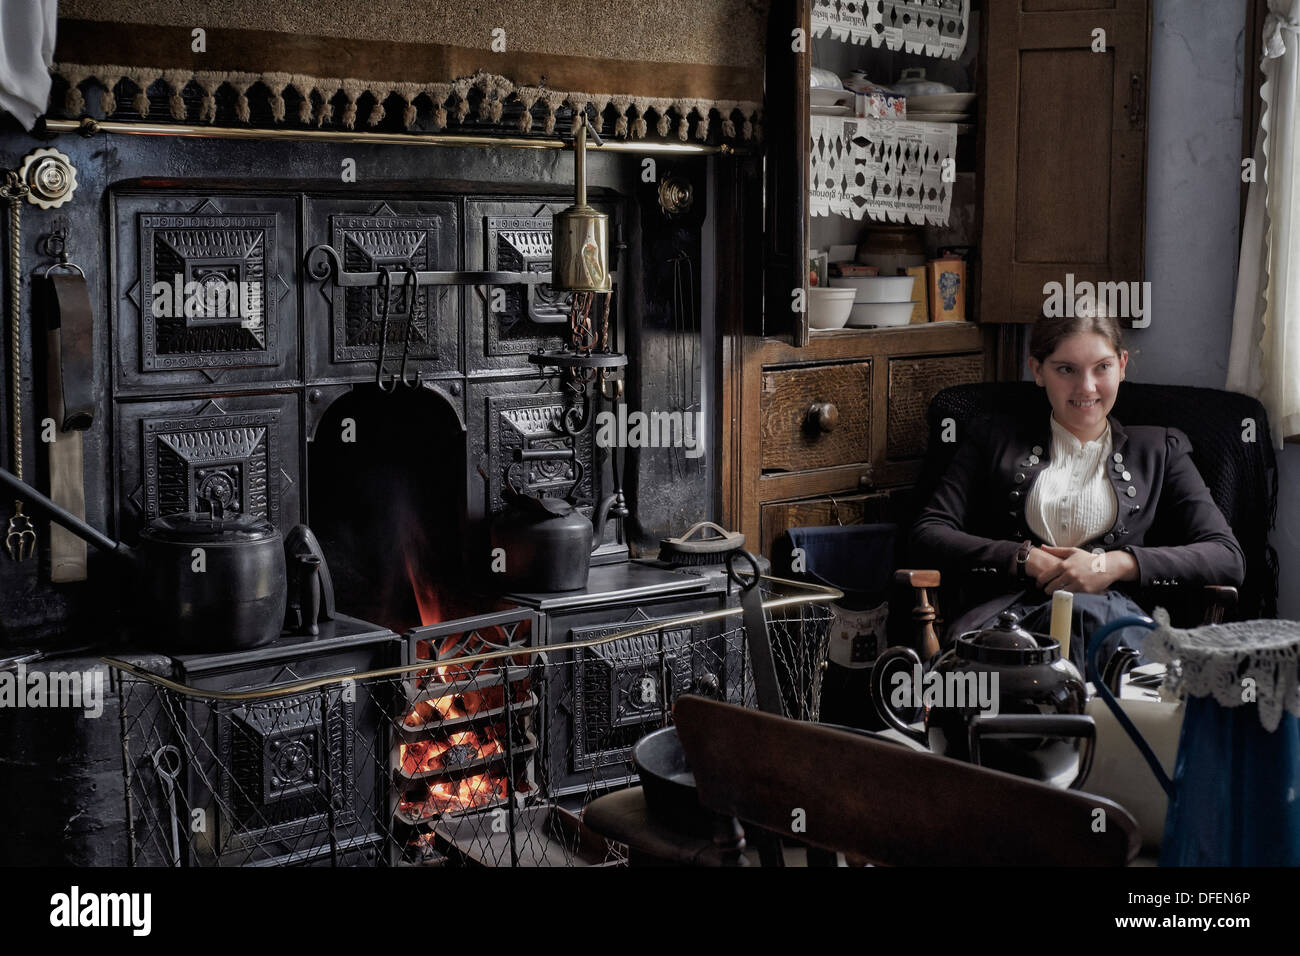 Musée vivant de Black Country. Employé féminin accueillant des visiteurs dans une maison de type chalet préservée des années 1800/début des années 1900. Chambre de l'époque victorienne Angleterre Royaume-Uni Banque D'Images